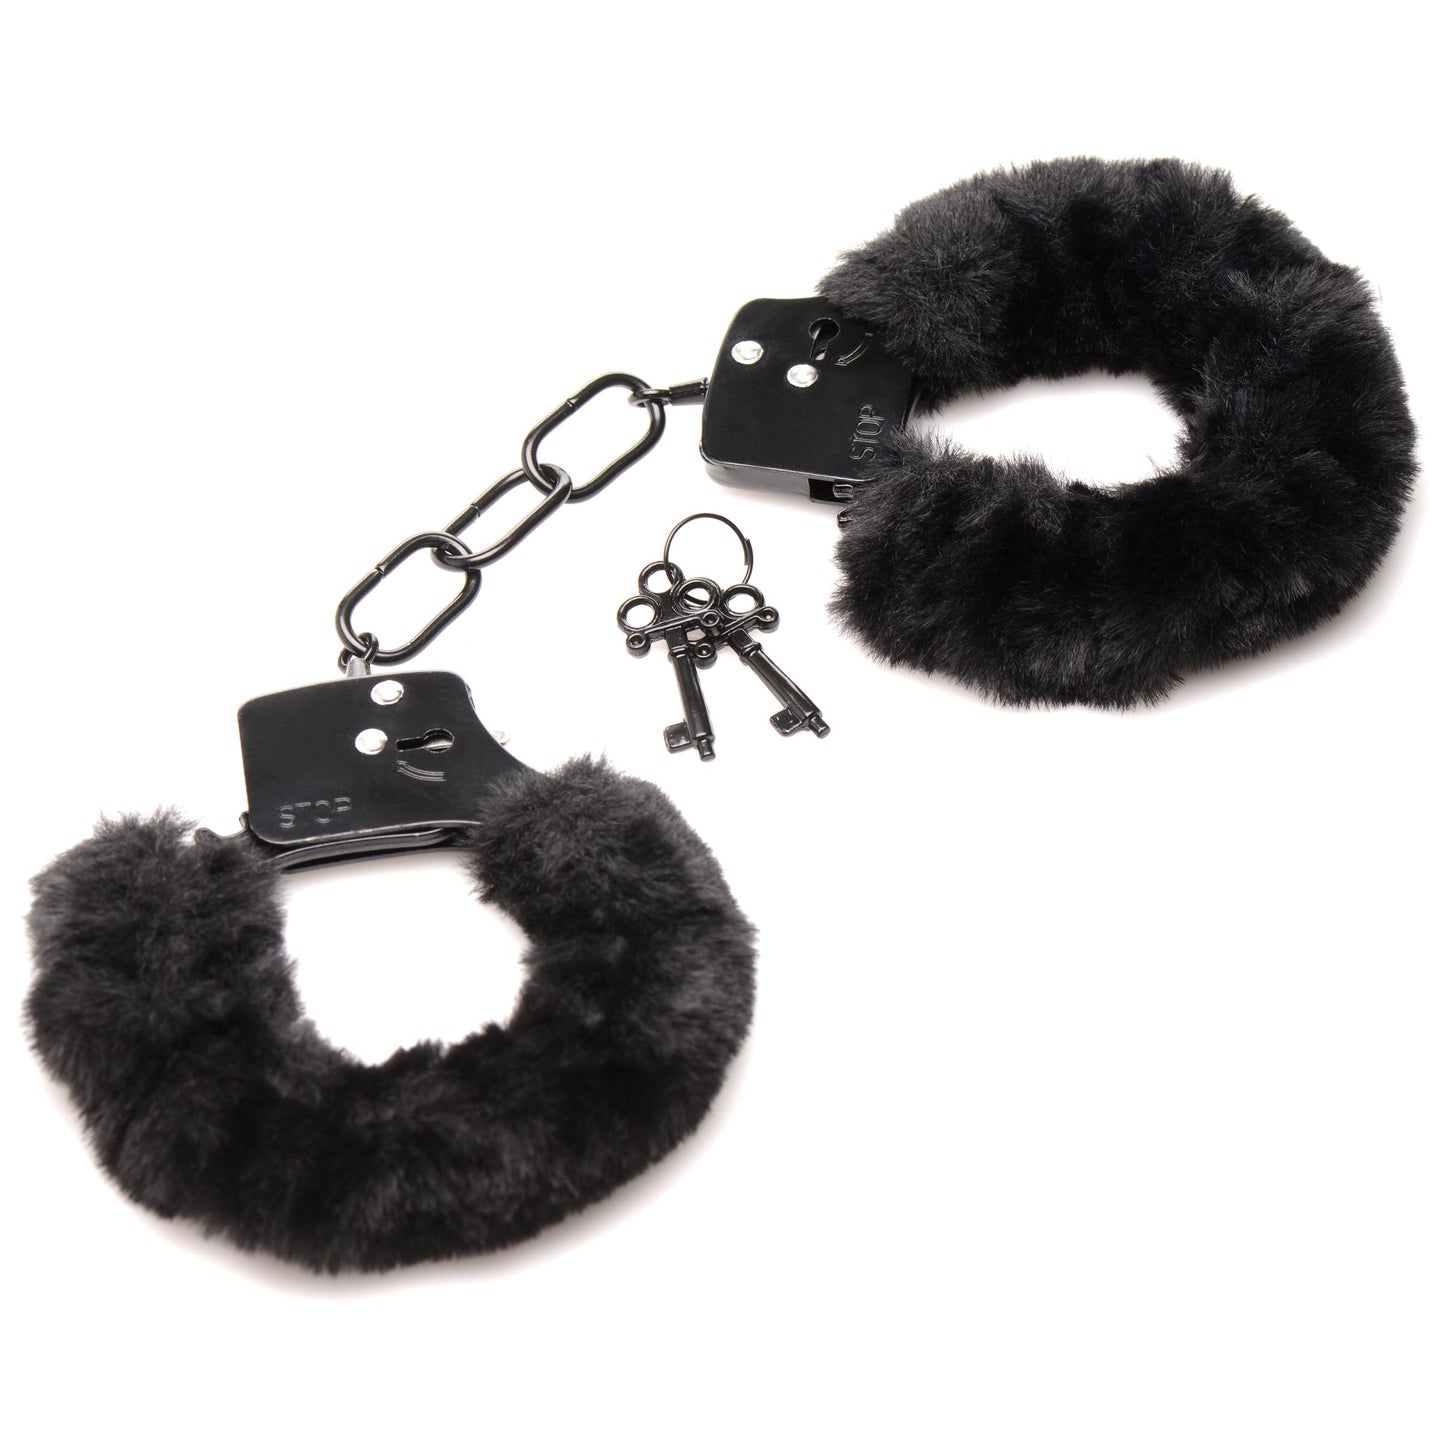 Cuffed In Fur Furry Handcuffs - Black - UABDSM